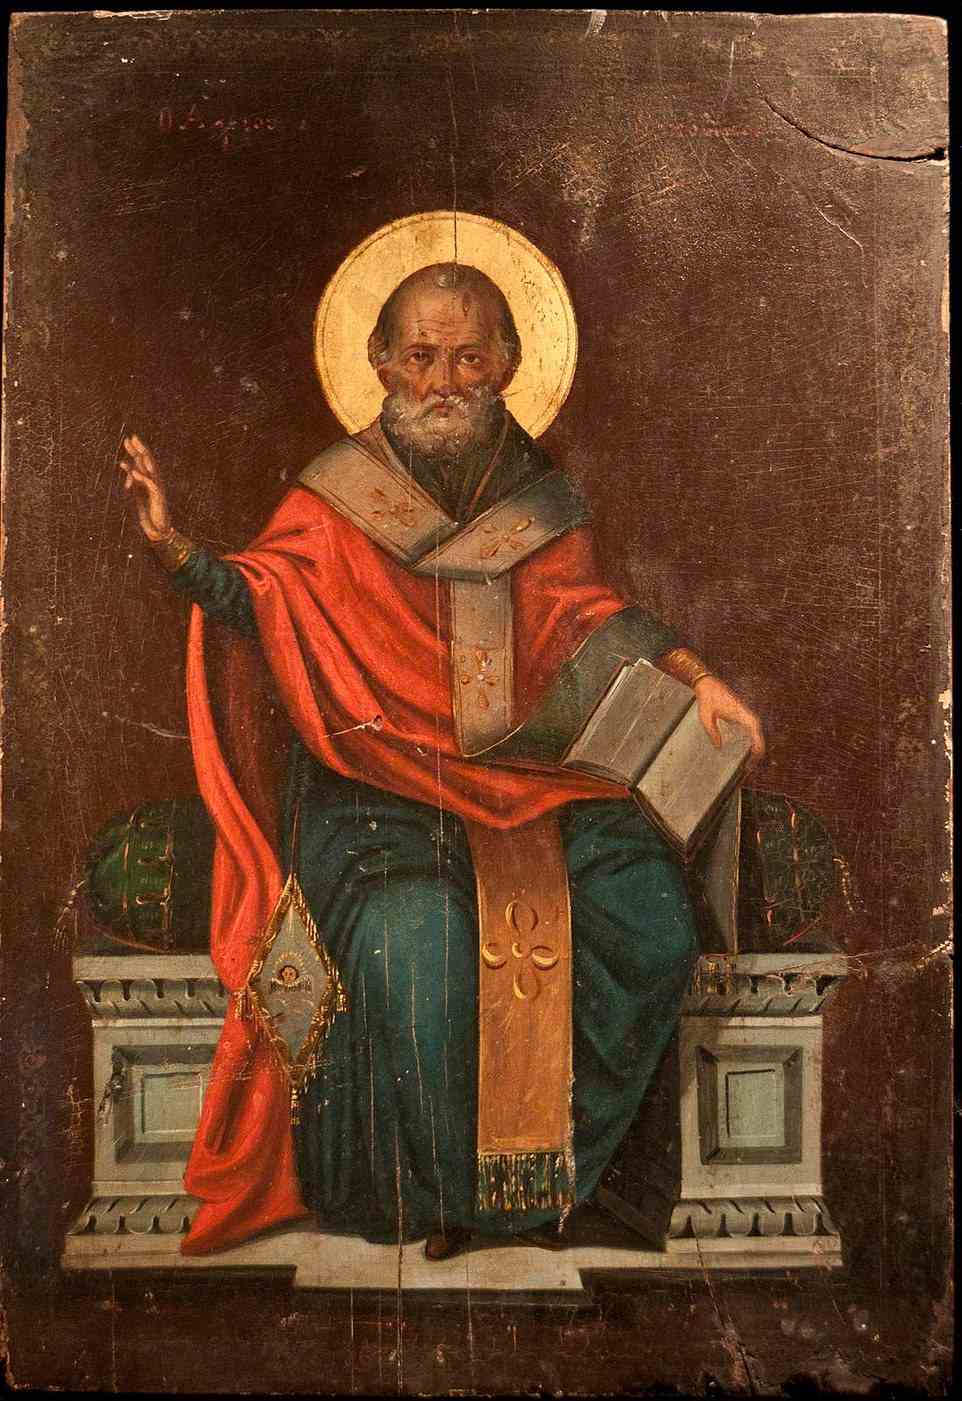 Der heilige Nikolaus, der zwischen 270 und 343 n. Chr. lebte, ist vor allem dafür bekannt, dass er Geld erbte, das er an die Armen verschenkte, und insbesondere die Geschichte, wie er drei Mädchen Säcke voller Gold schenkte, um sie vor einem Leben in der Prostitution zu retten